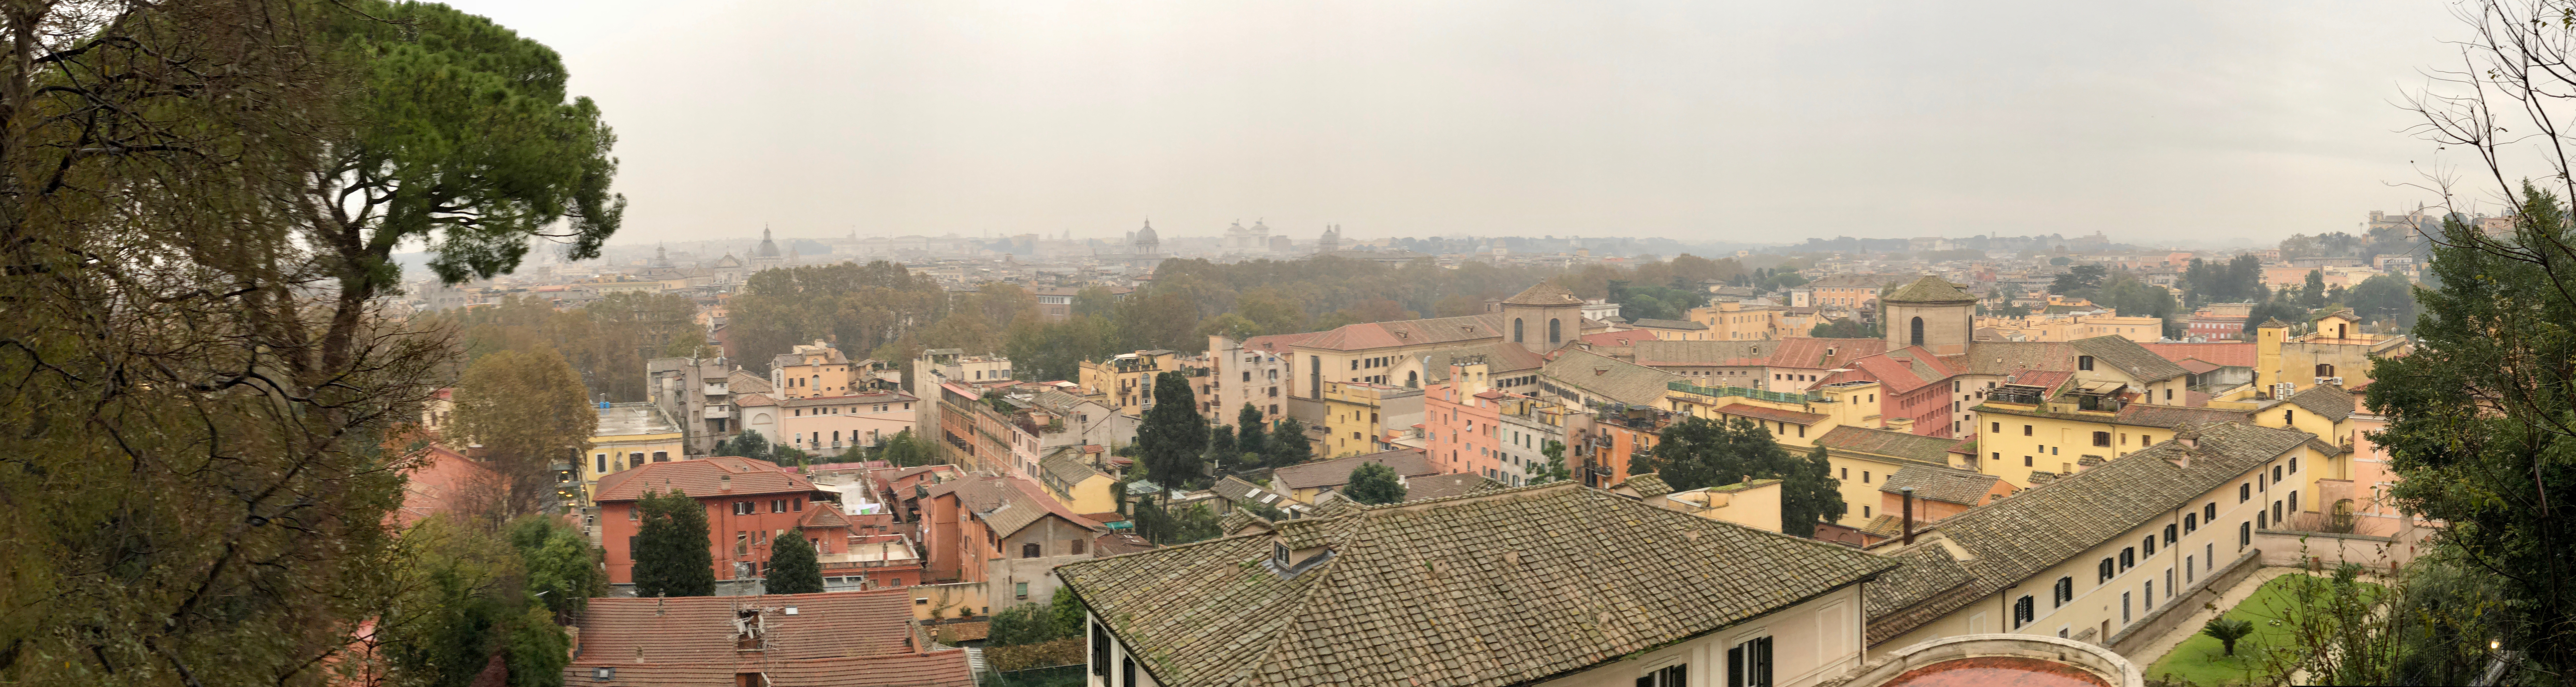 Rainy Rome Panorama, Gianicolo • Janiculum Hill (31912261767).jpg